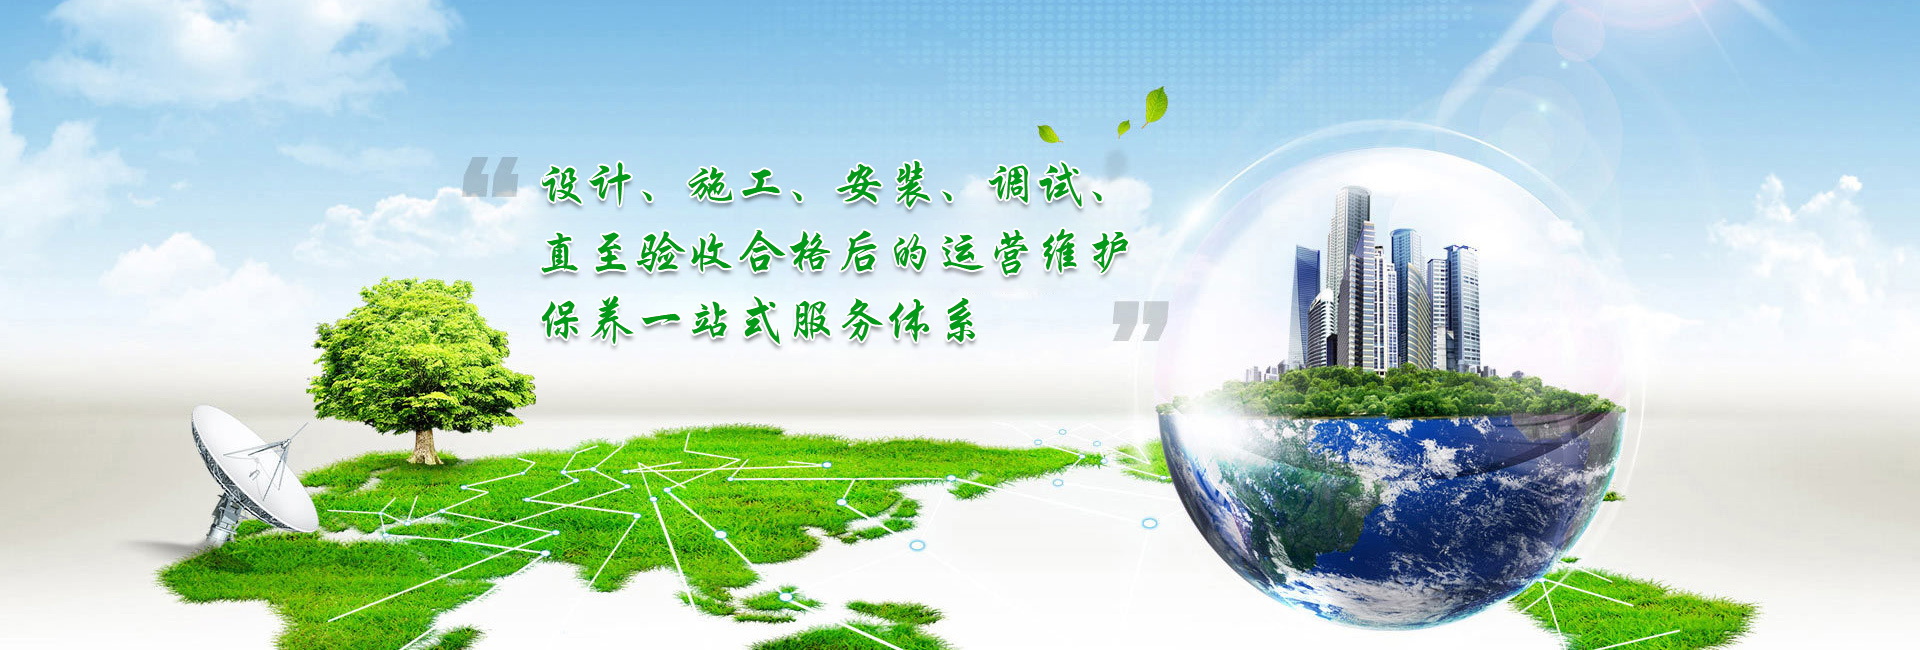 bwin·必赢(中国)唯一官方网站_项目9125